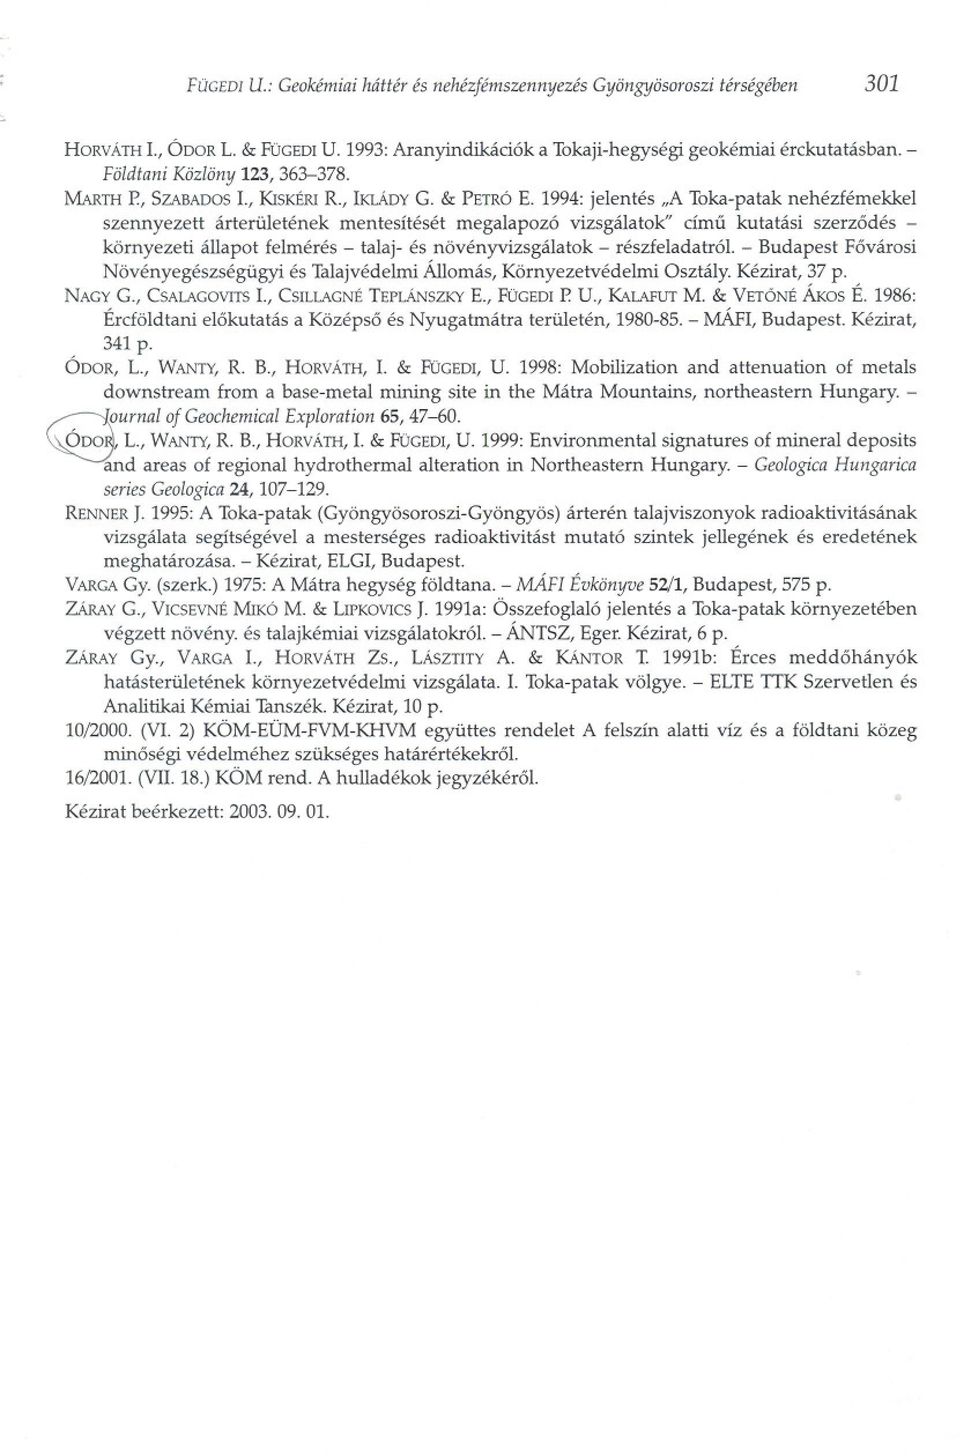 1994: jelentés "A Toka-patak nehézfémekkel szennyezett árterületének mentesítését megalapozó vizsgálatok" címu kutatási szerzodés - környezeti állapot felmérés - talaj- és növényvizsgálatok -